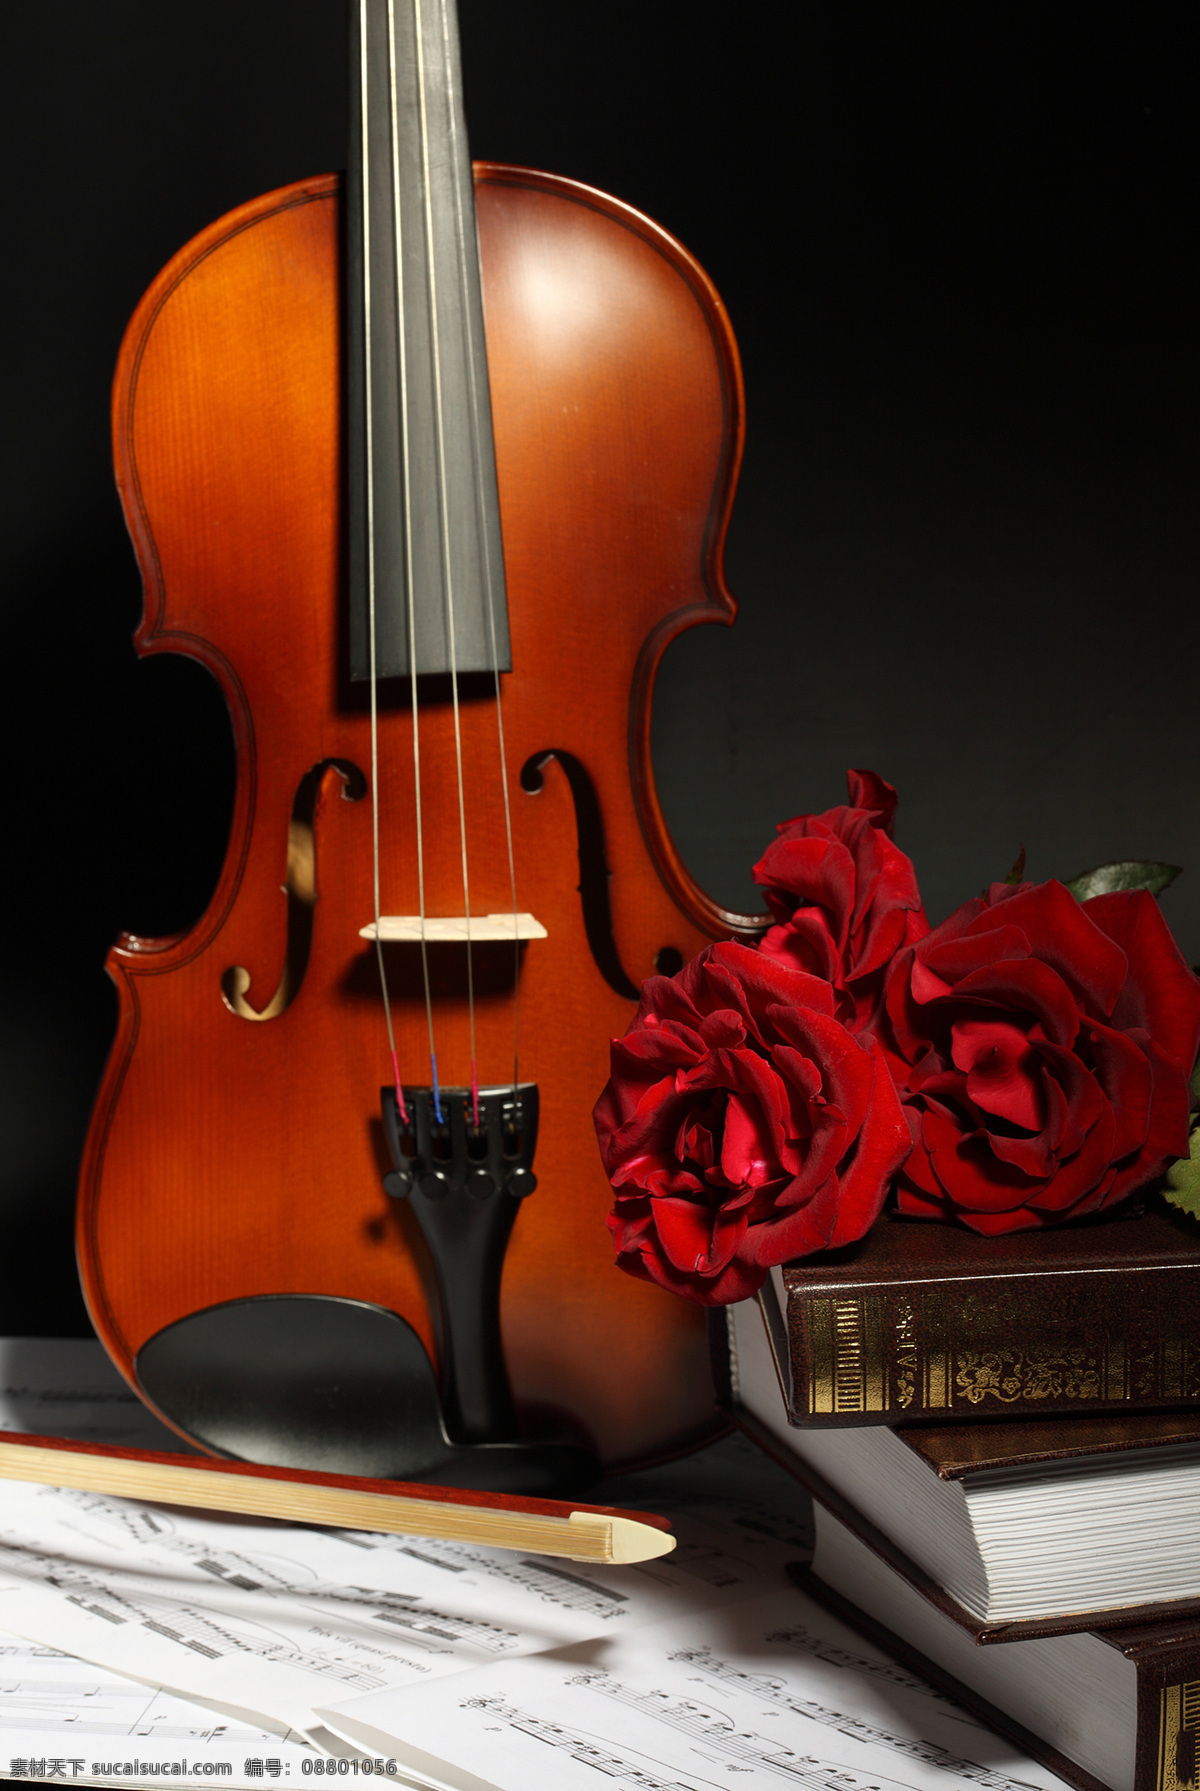 书本 小提琴 花朵 玫瑰花 花朵花卉 美丽花朵 鲜花乐谱 五线音谱 音乐 影音娱乐 生活百科